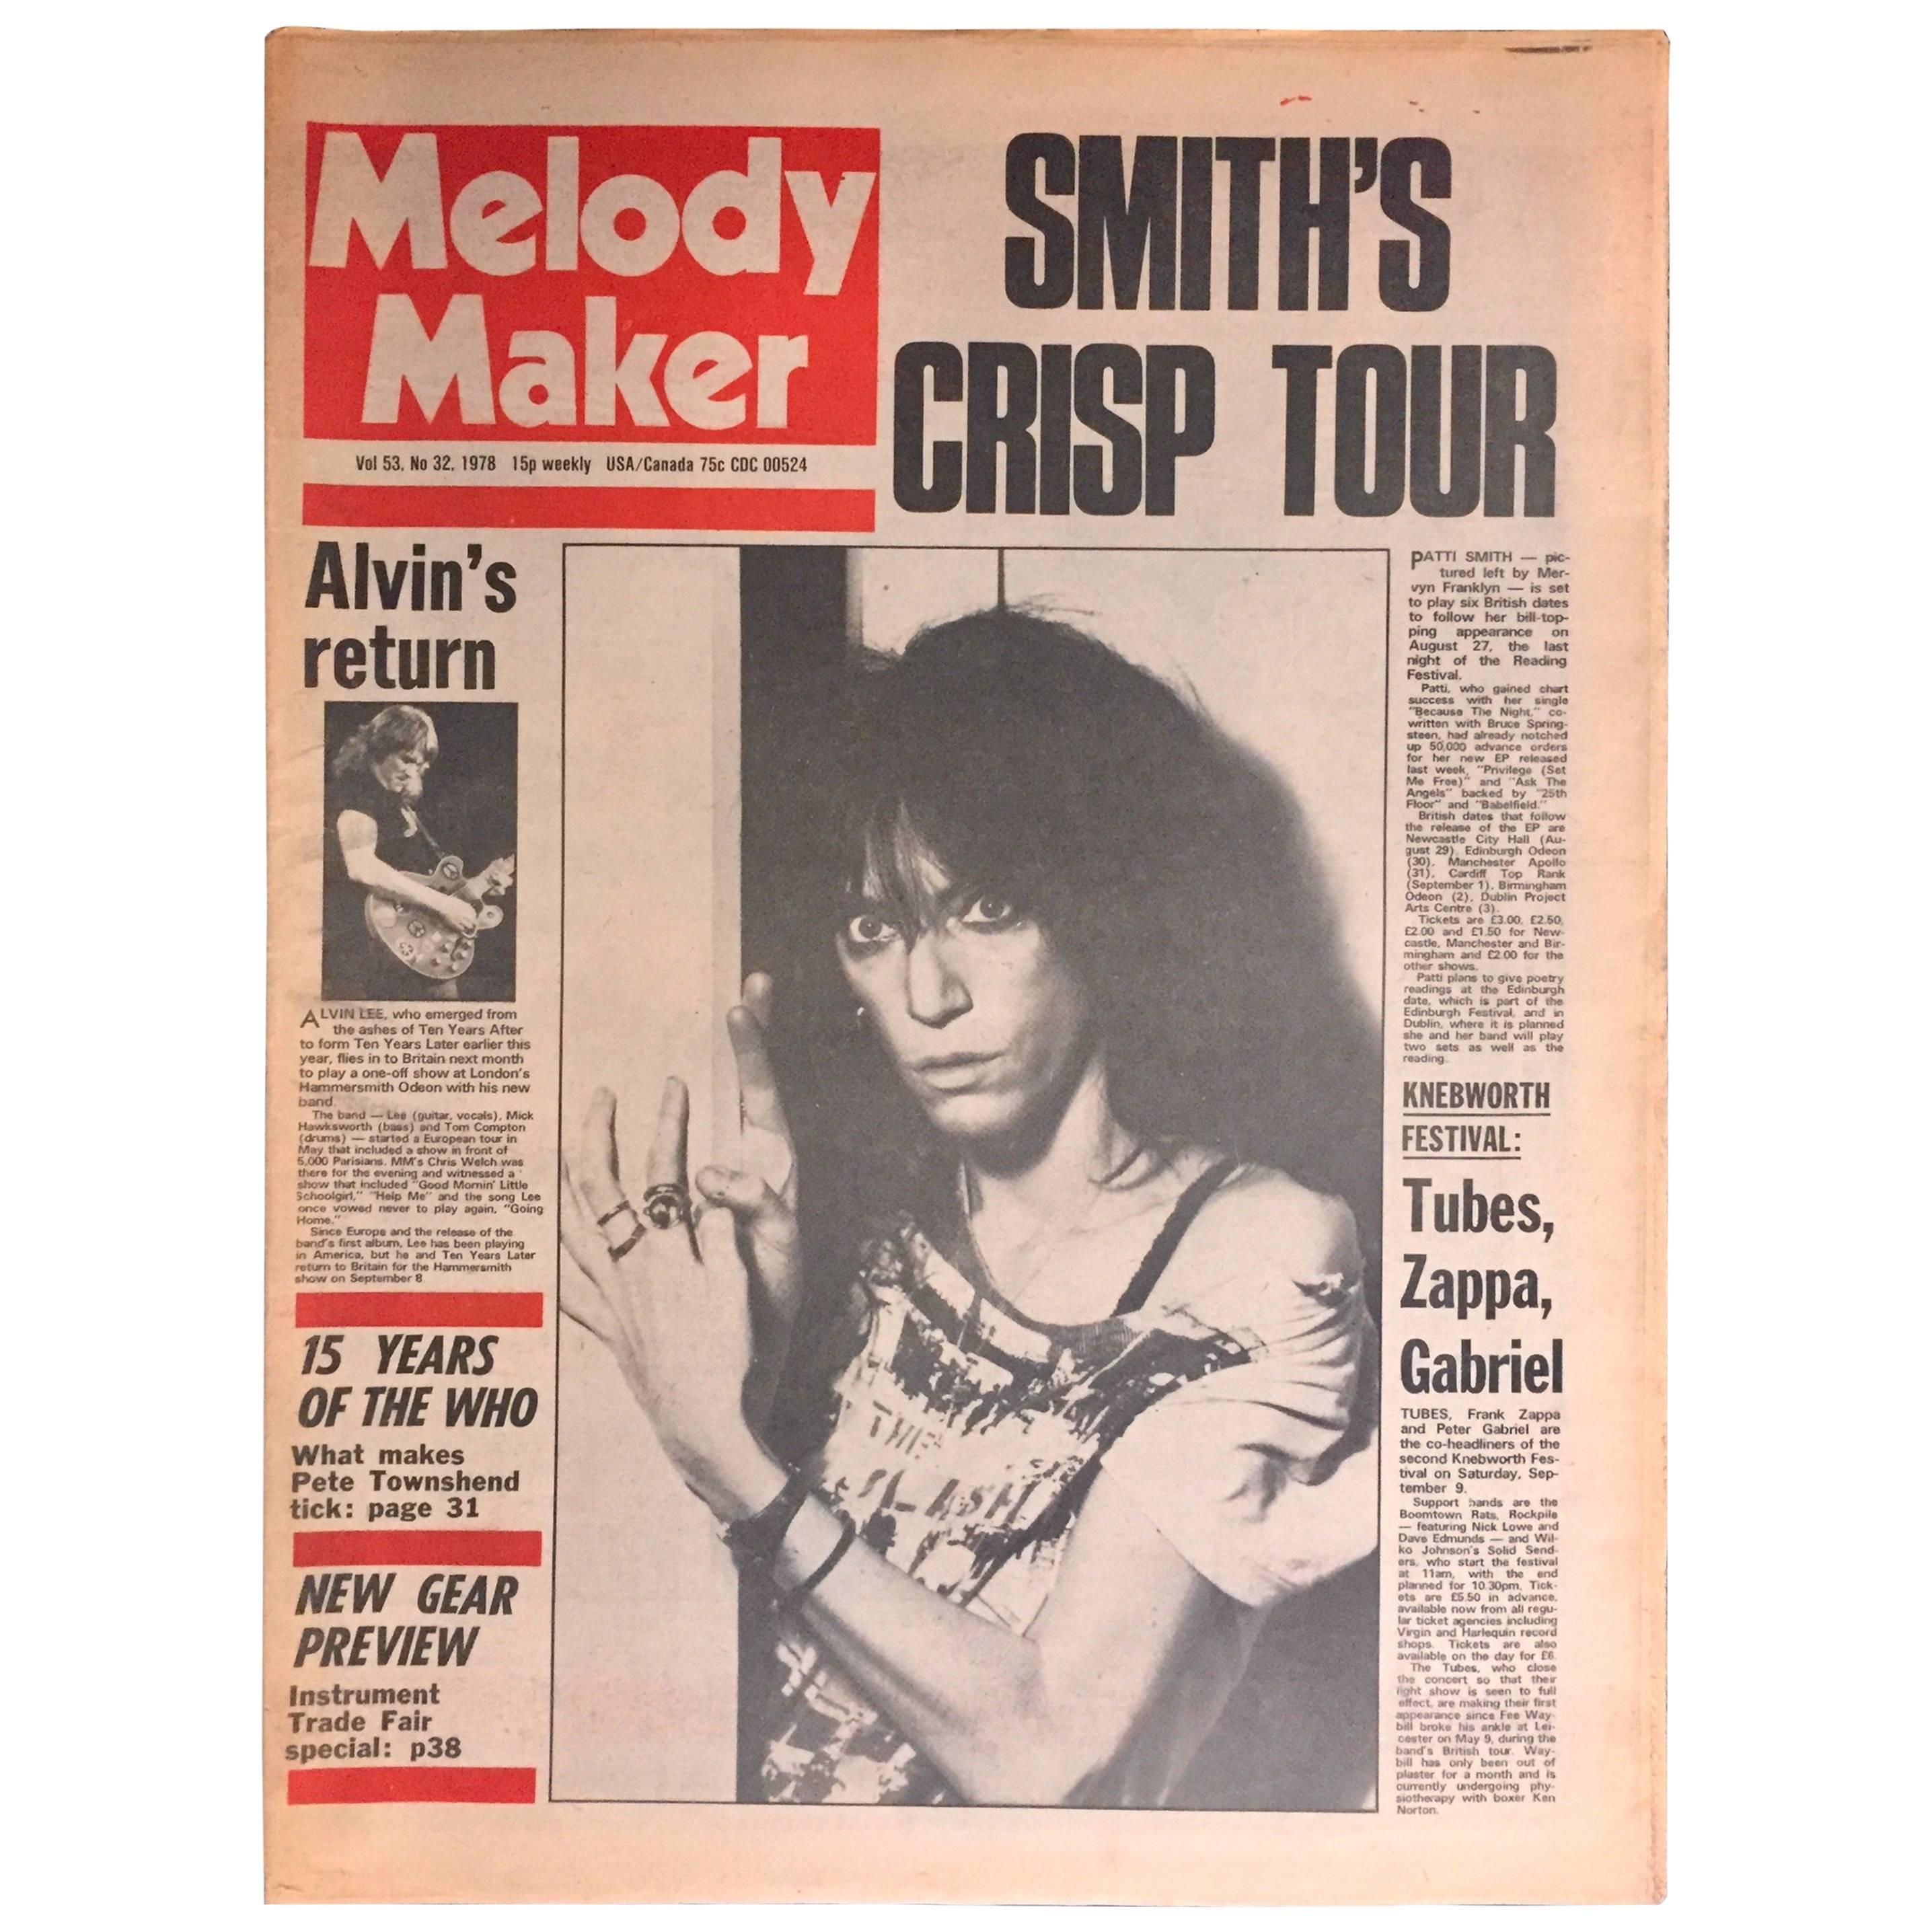 Vintage Patti Smith Melody Maker, 1978